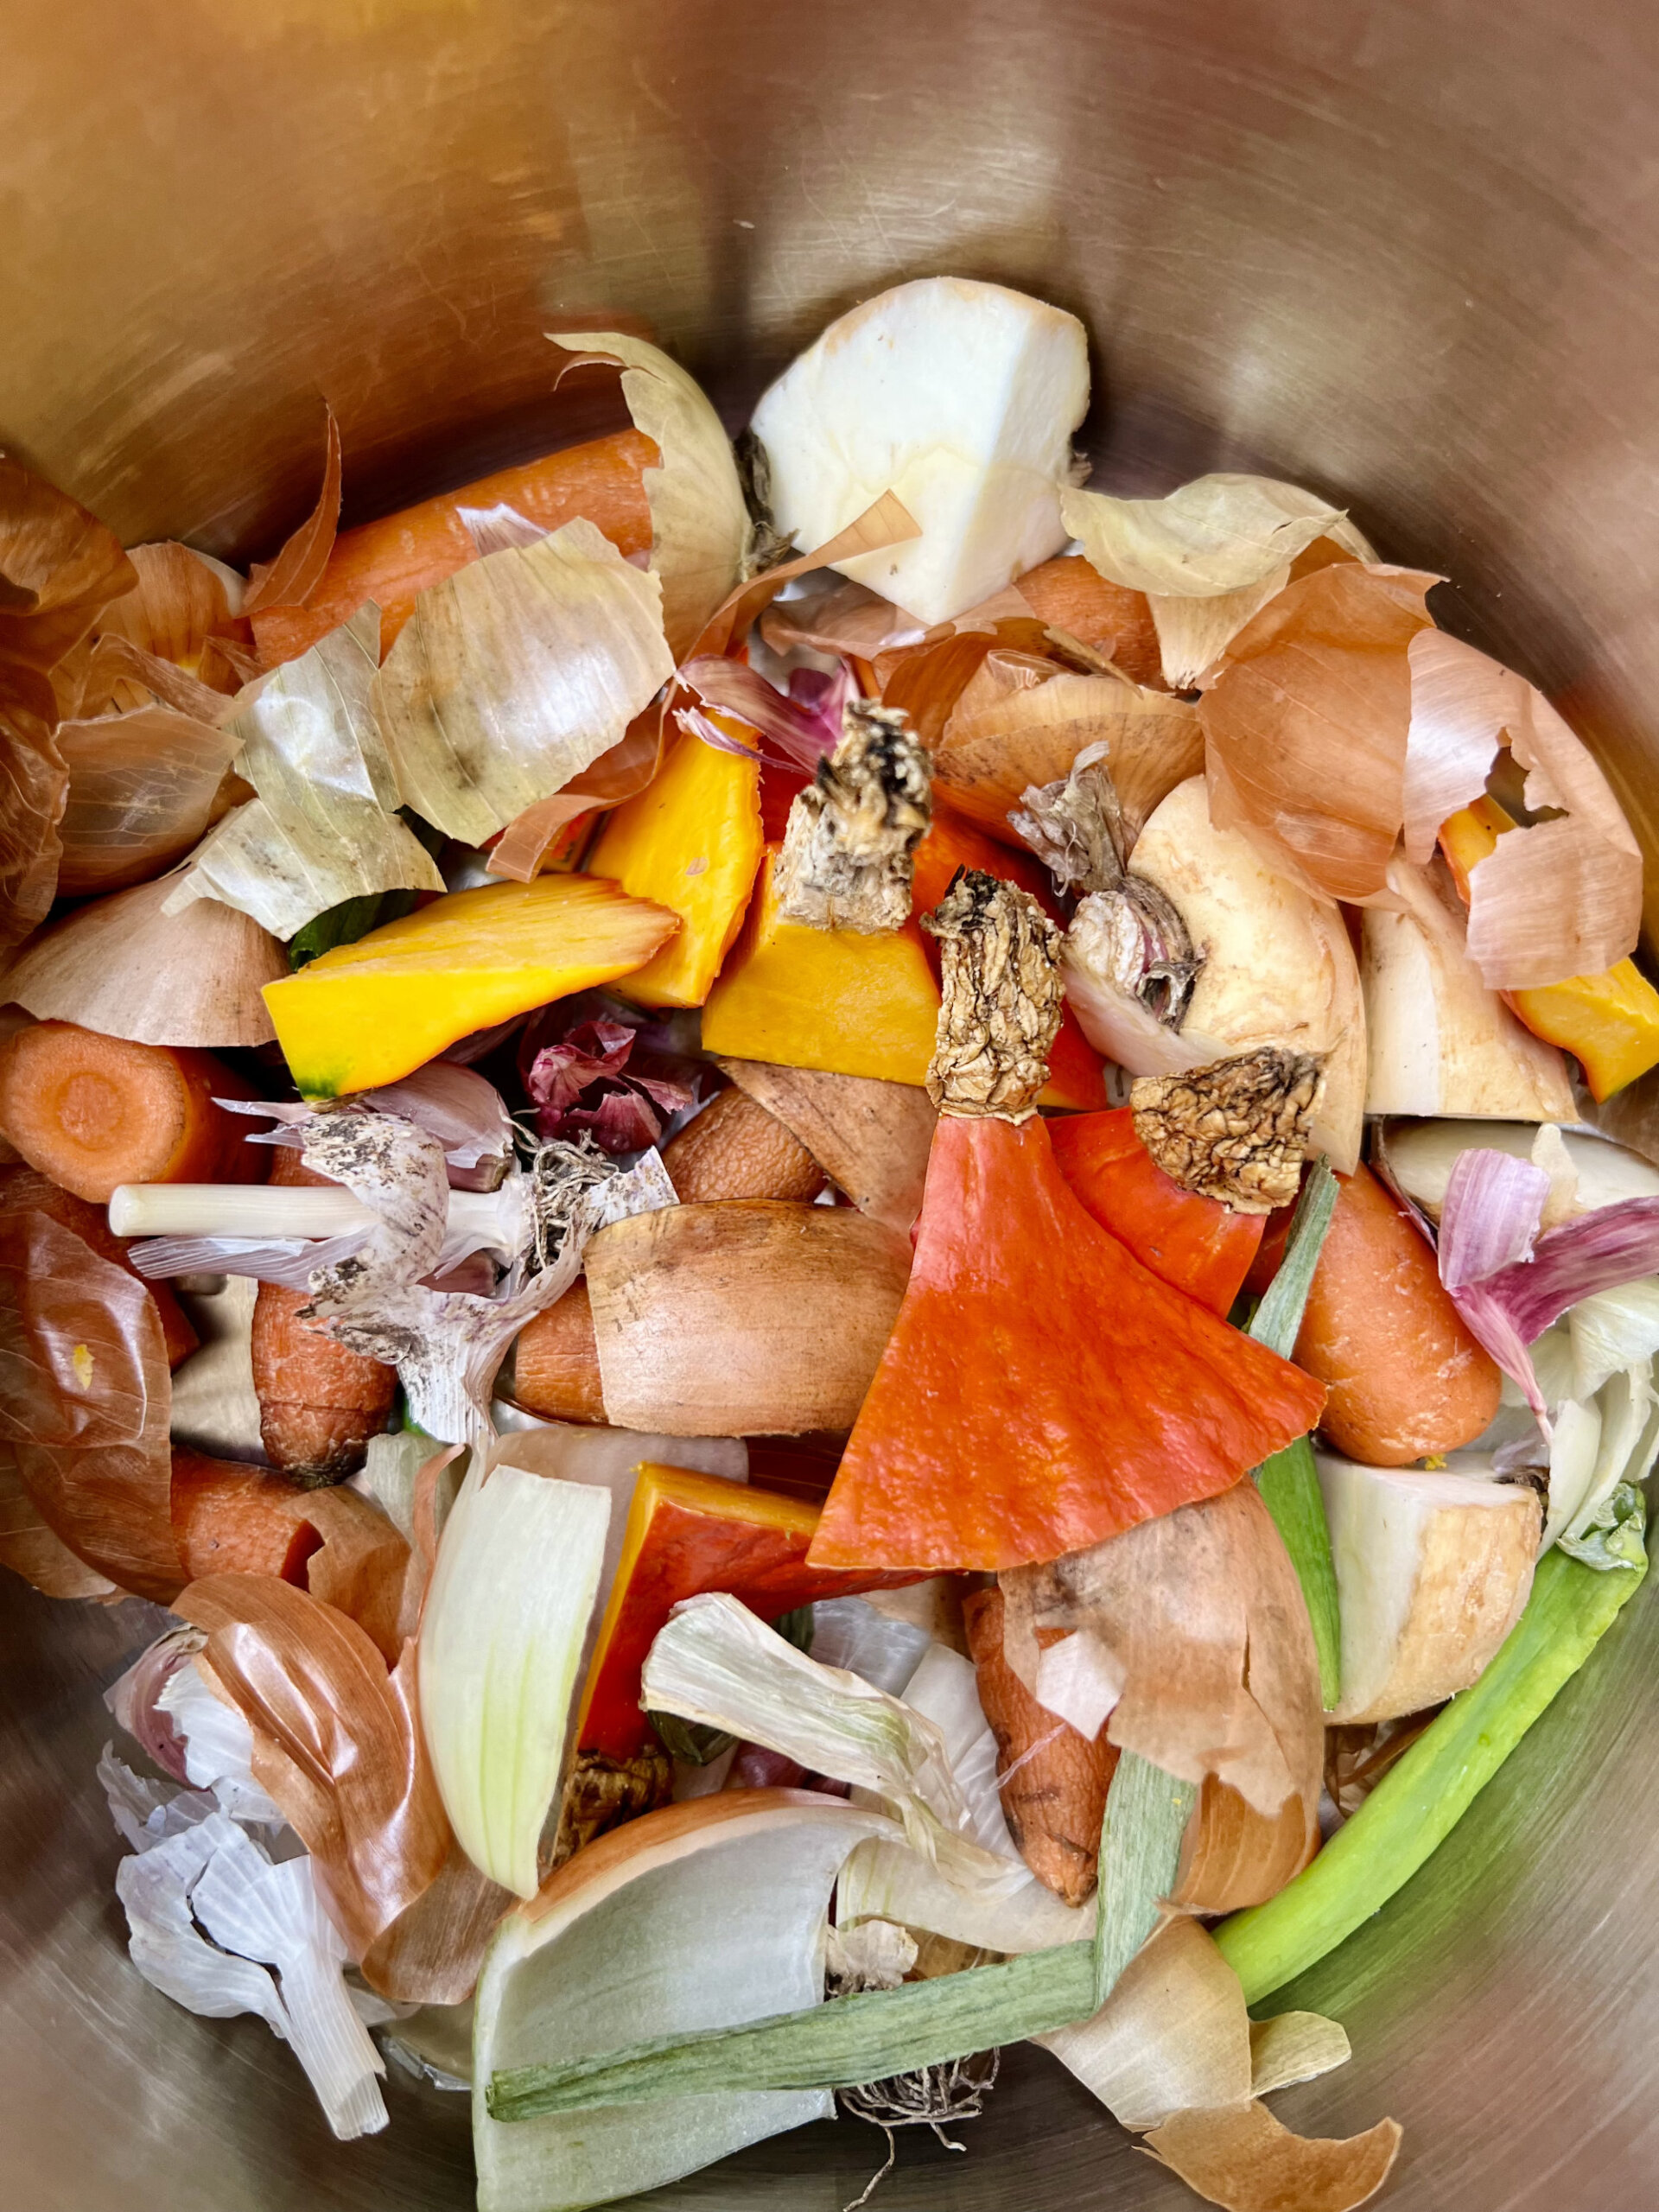 Cut veggie waste in pot